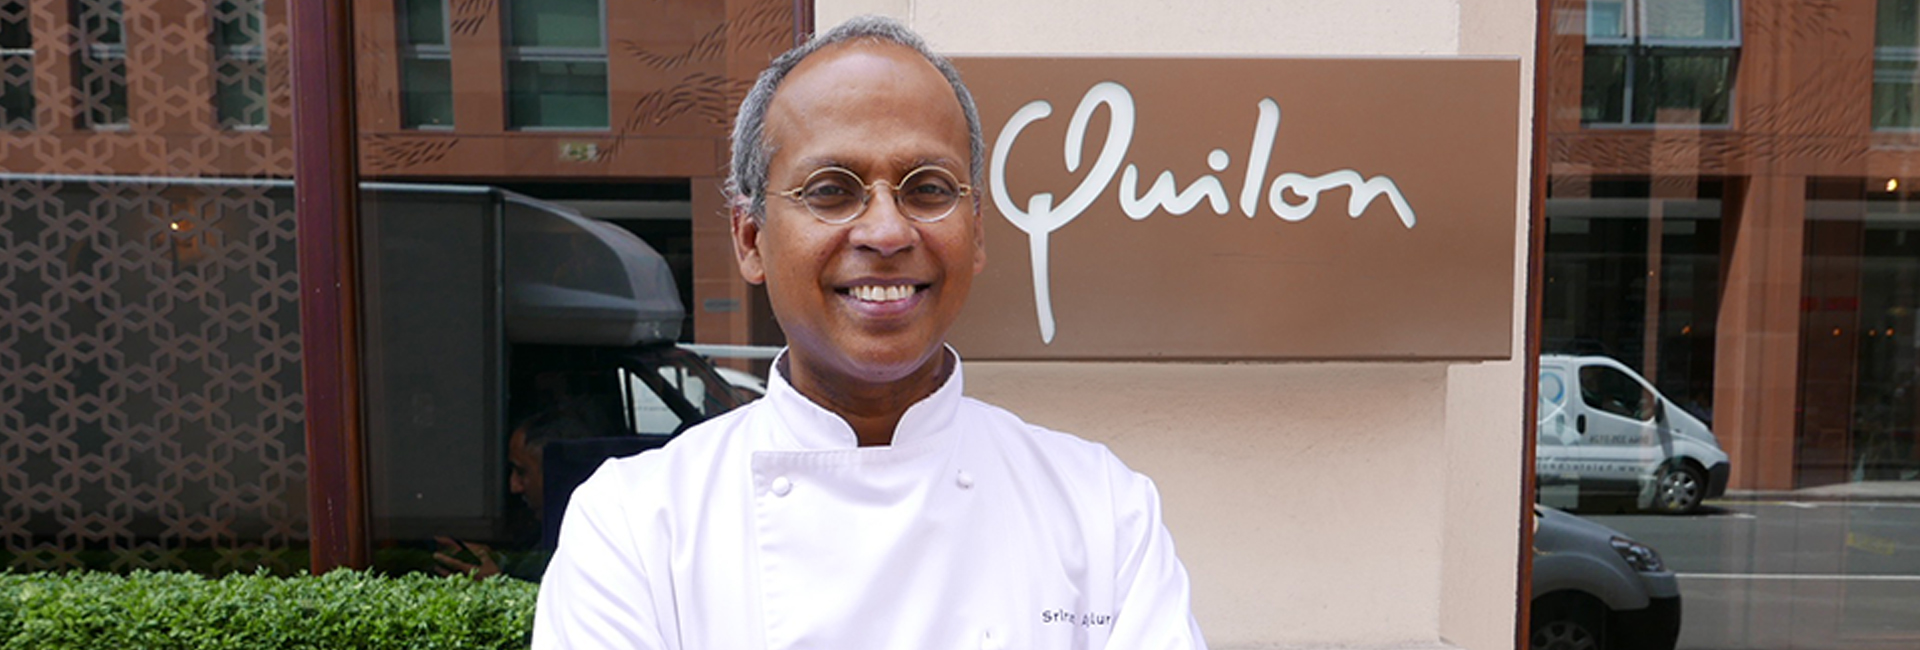 Sriram Aylur: Đầu bếp sao Michelin phục vụ ẩm thực Nam Ấn đích thực cho người London